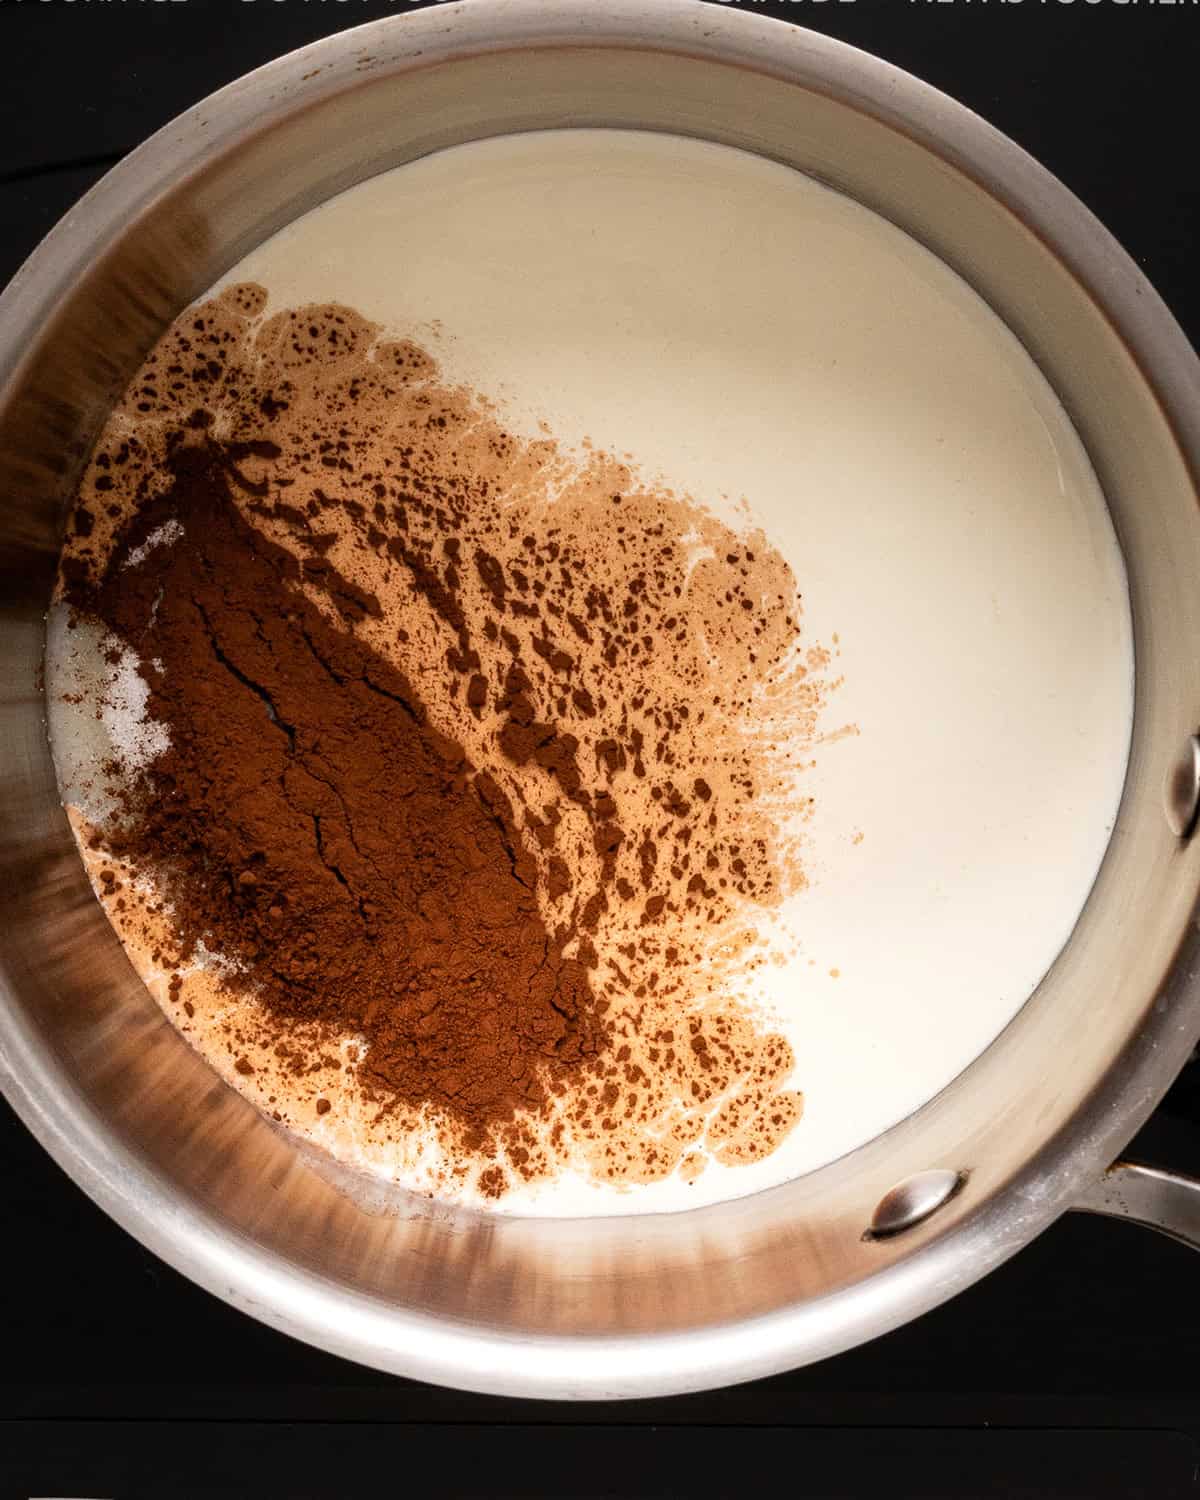 making Vegan Chocolate Fondue - ingredients in a saucepan before whisking